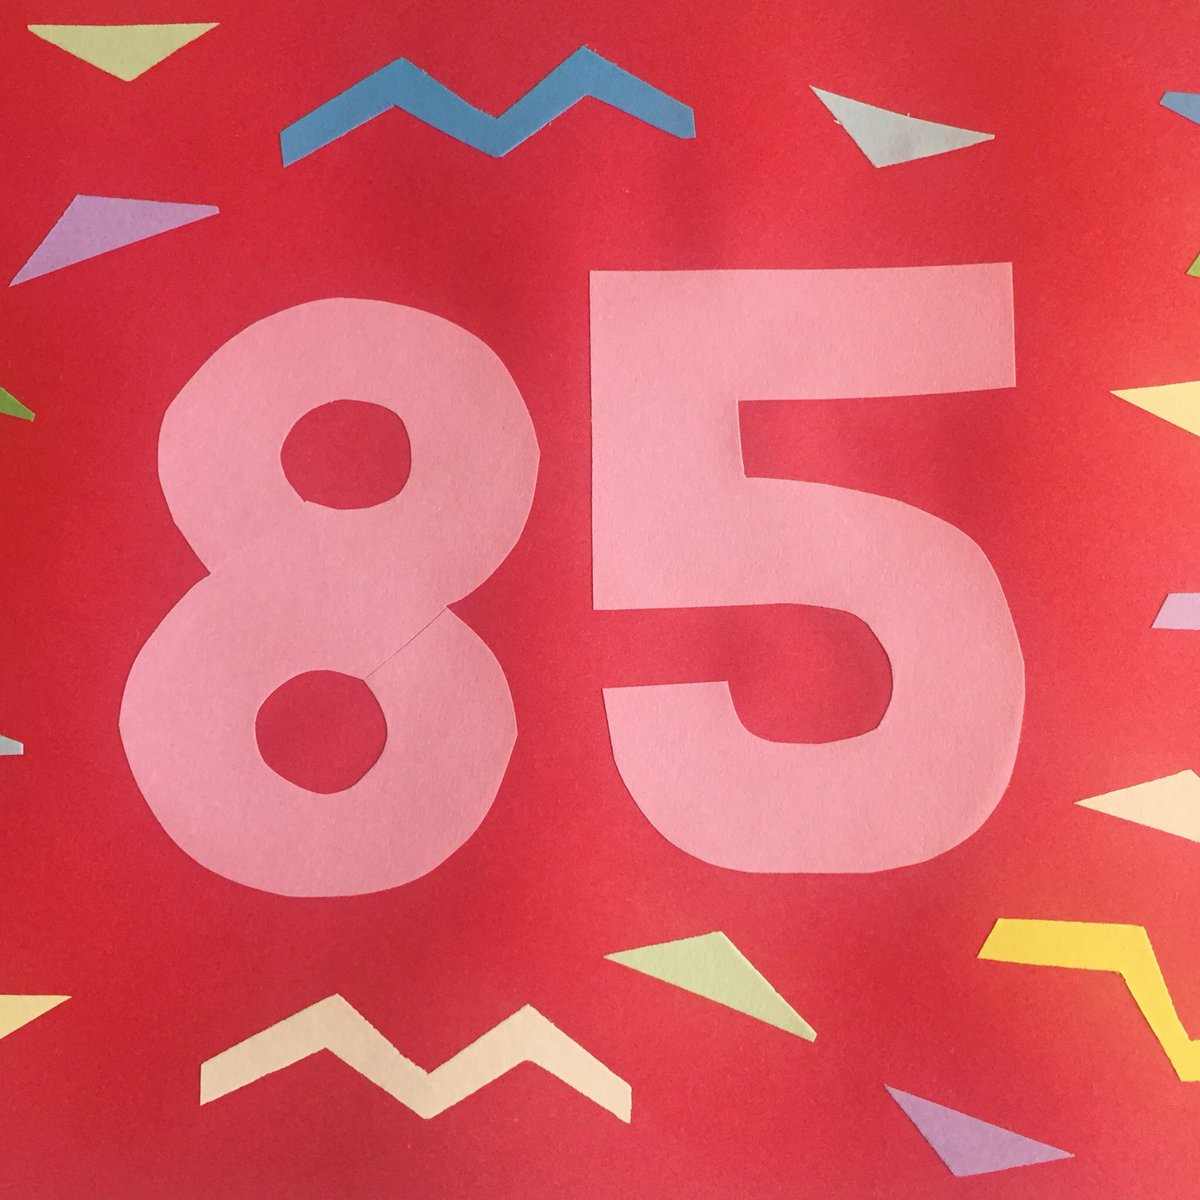 Number 85 🙌🙌🙌🙌🙌🙌🙌🙌🖐 #purestarkids #typography #papercut #illustration #collage #art #number #number85 instagram.com/p/BNRPTtRgNSv/